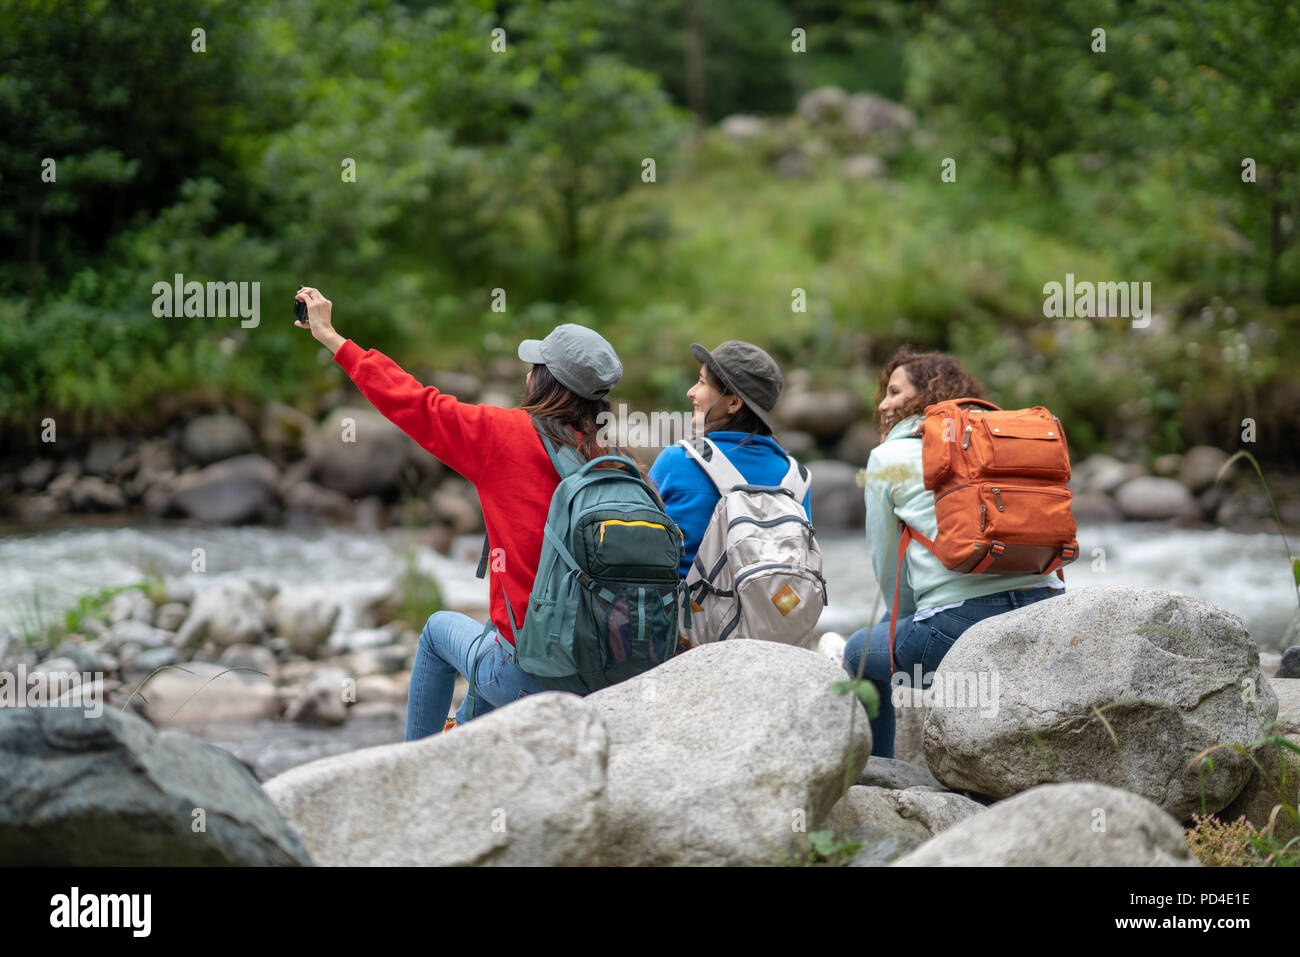 Gruppe von Frauen Freunde Backpacker Reise Reisen und Unter selfie im Wald in Wochenende Sommer - Lifestyle und Freizeit Konzept. Stockfoto